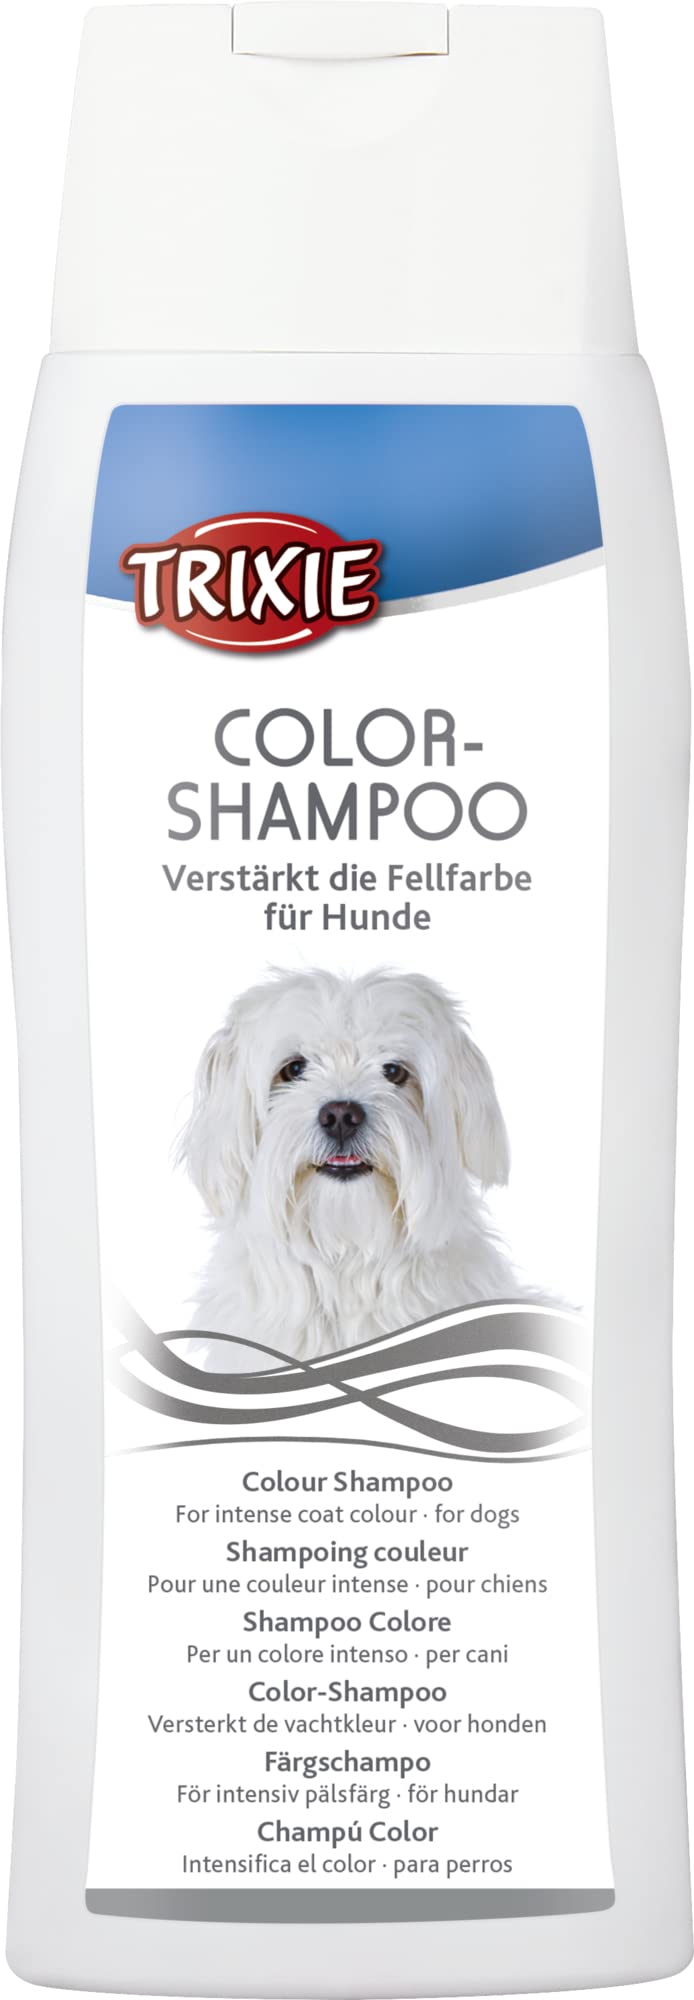 Color shampoo, white, 250 ml Color shampoo, white, 250 ml - PawsPlanet Australia